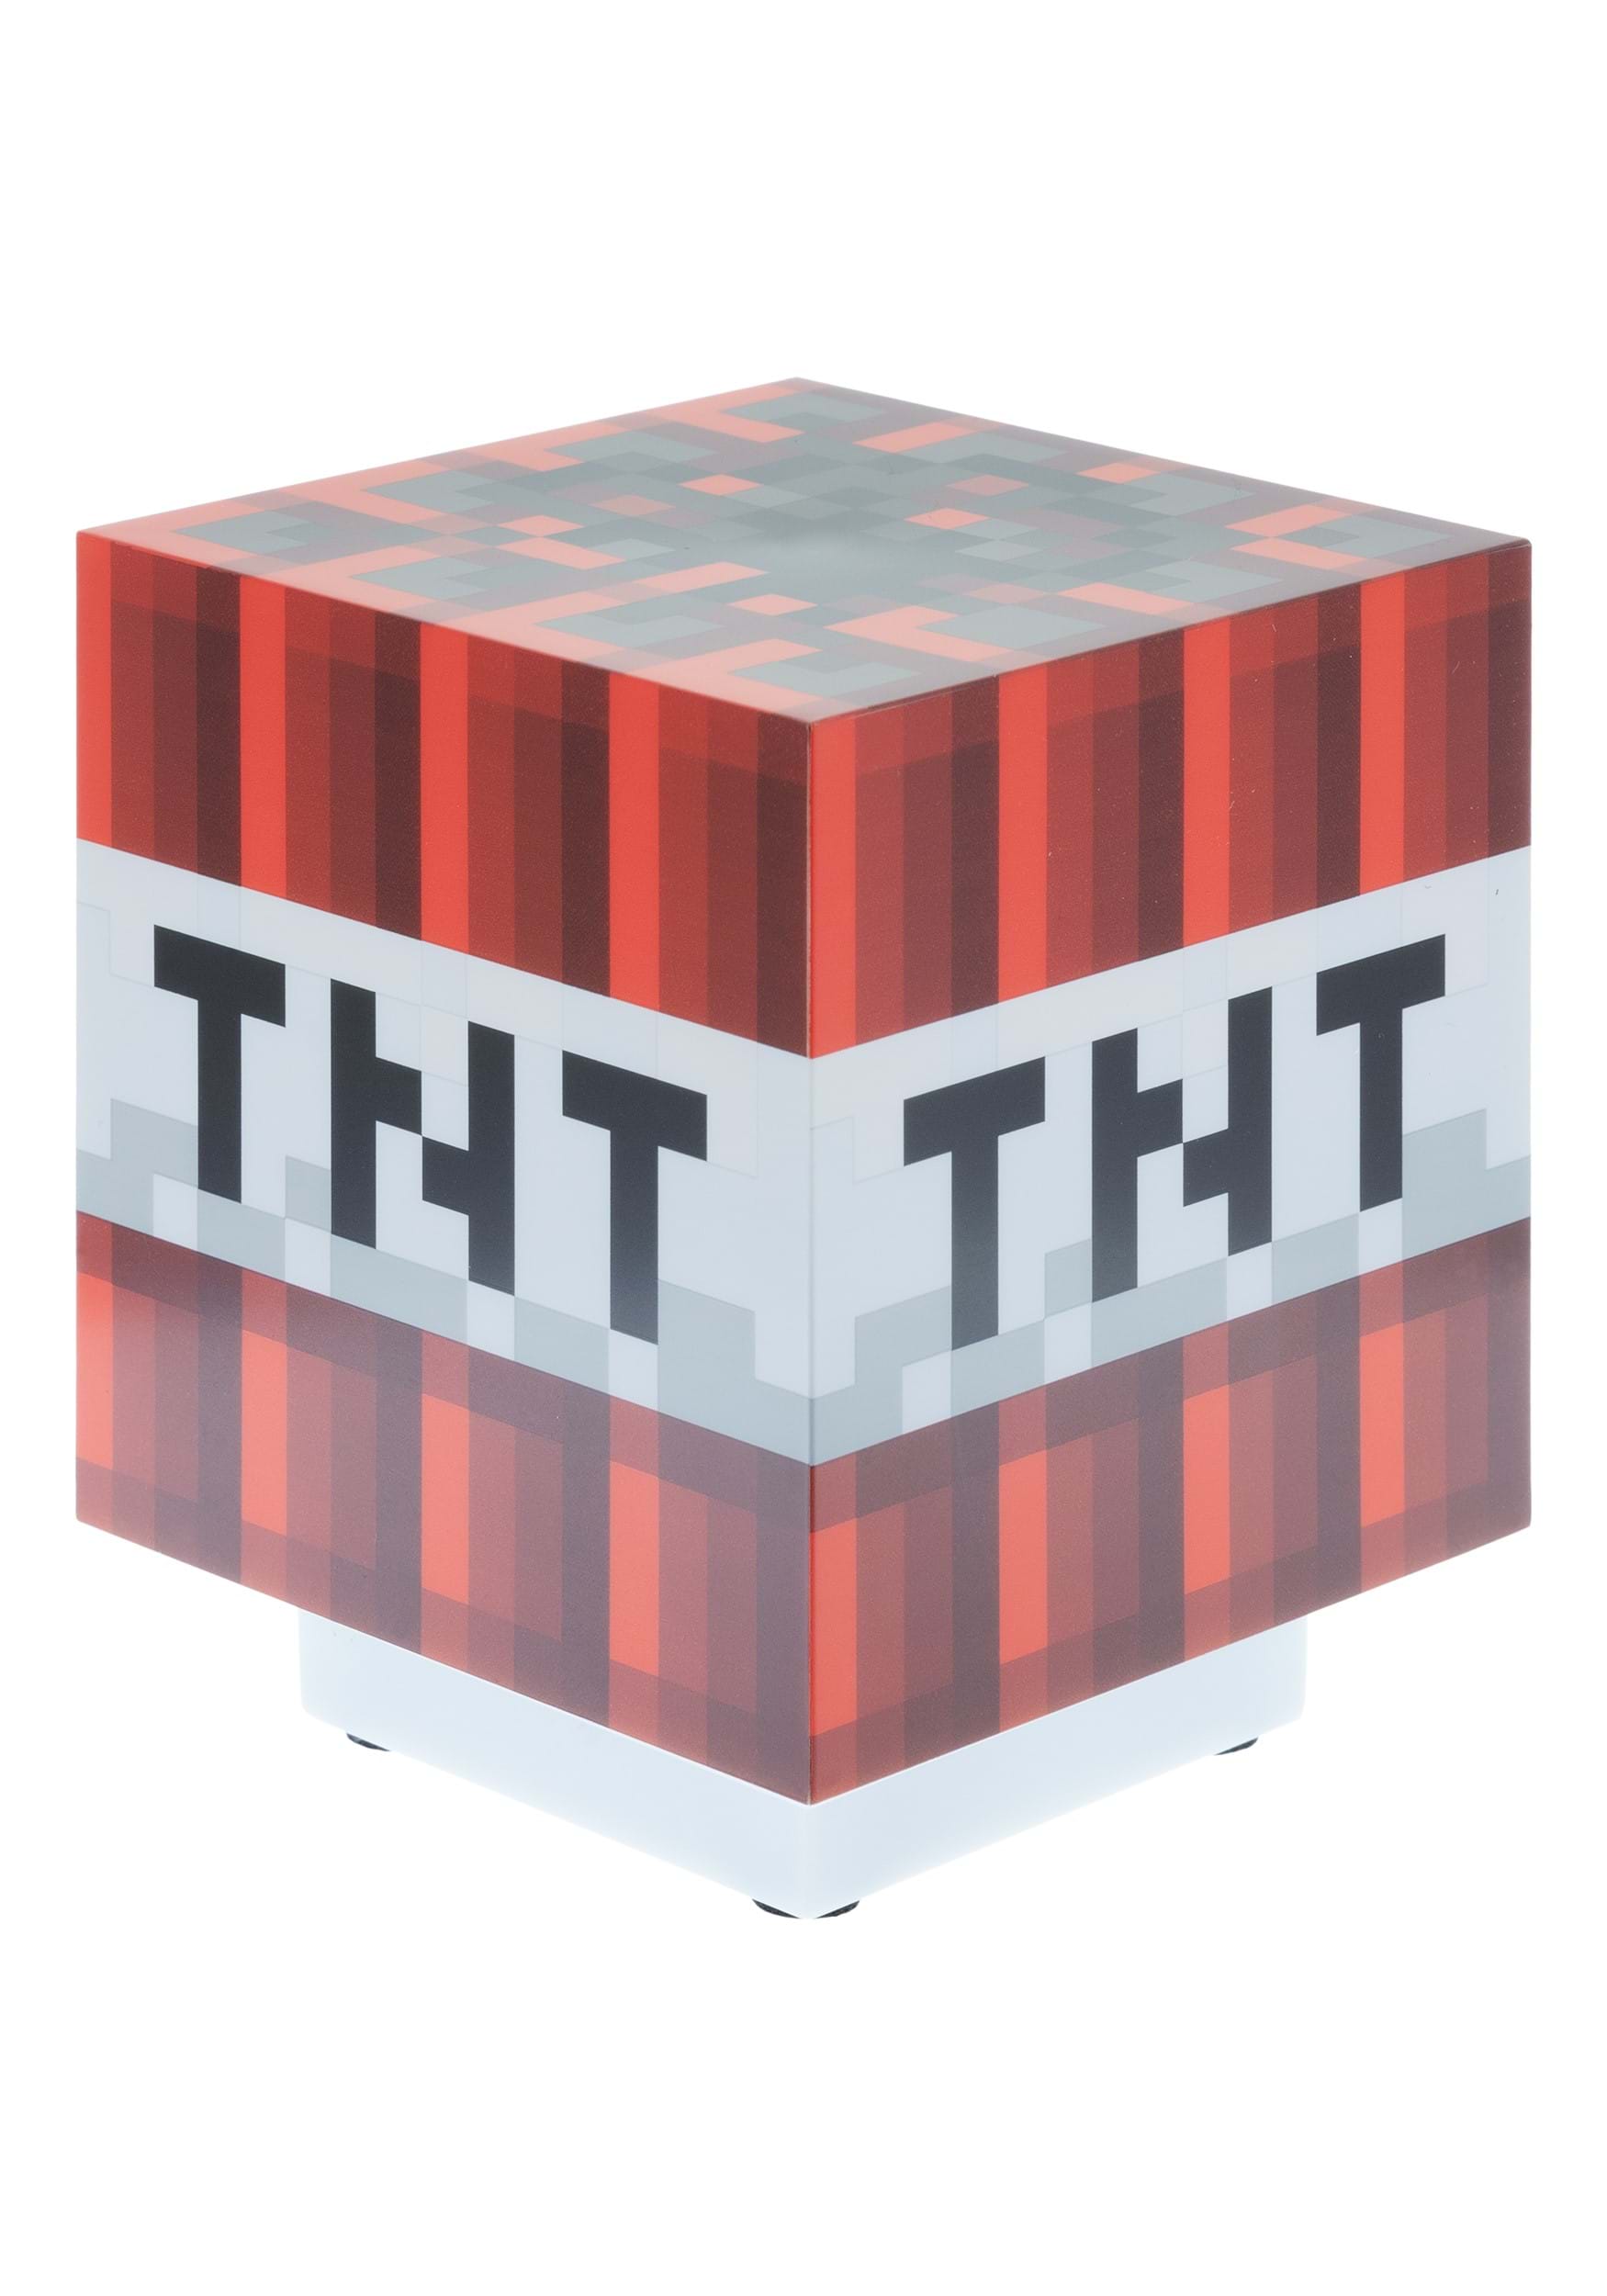 Como fazer TNT no Minecraft